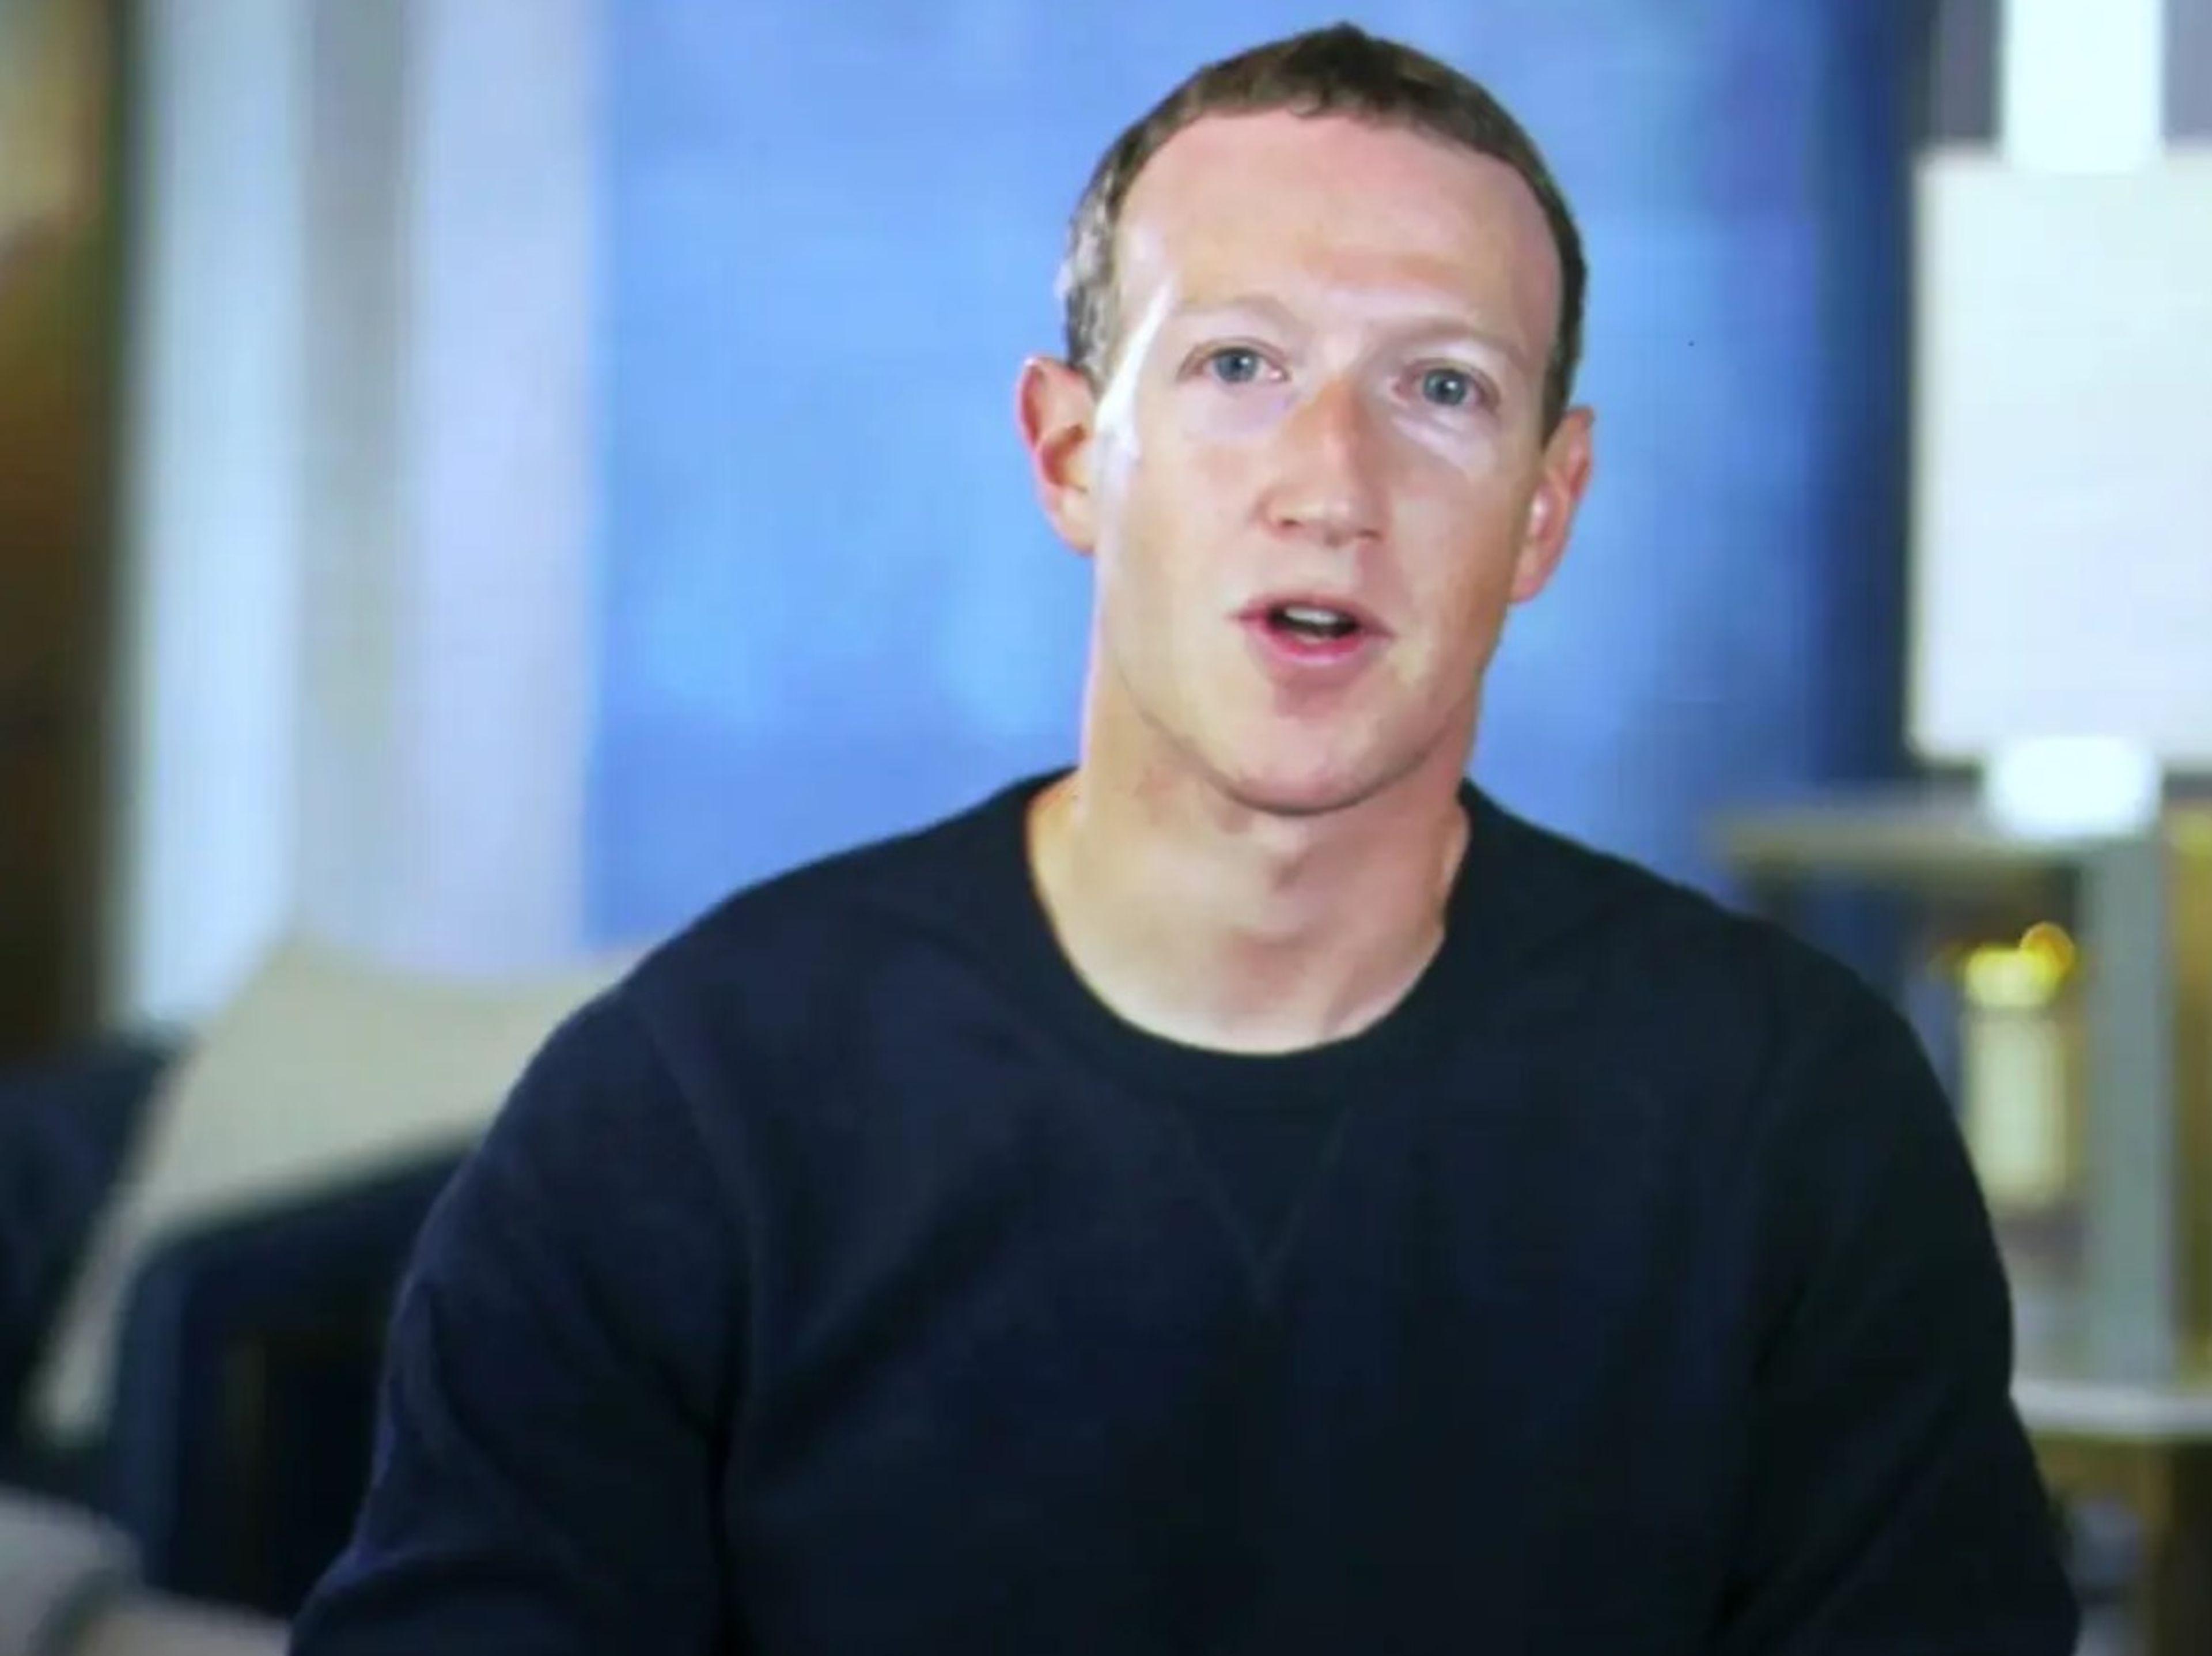 Mark Zuckerberg, CEO de Meta (antigua Facebook), en vídeo durante una conferencia del 15 de marzo de 2022 en Austin, Tejas.